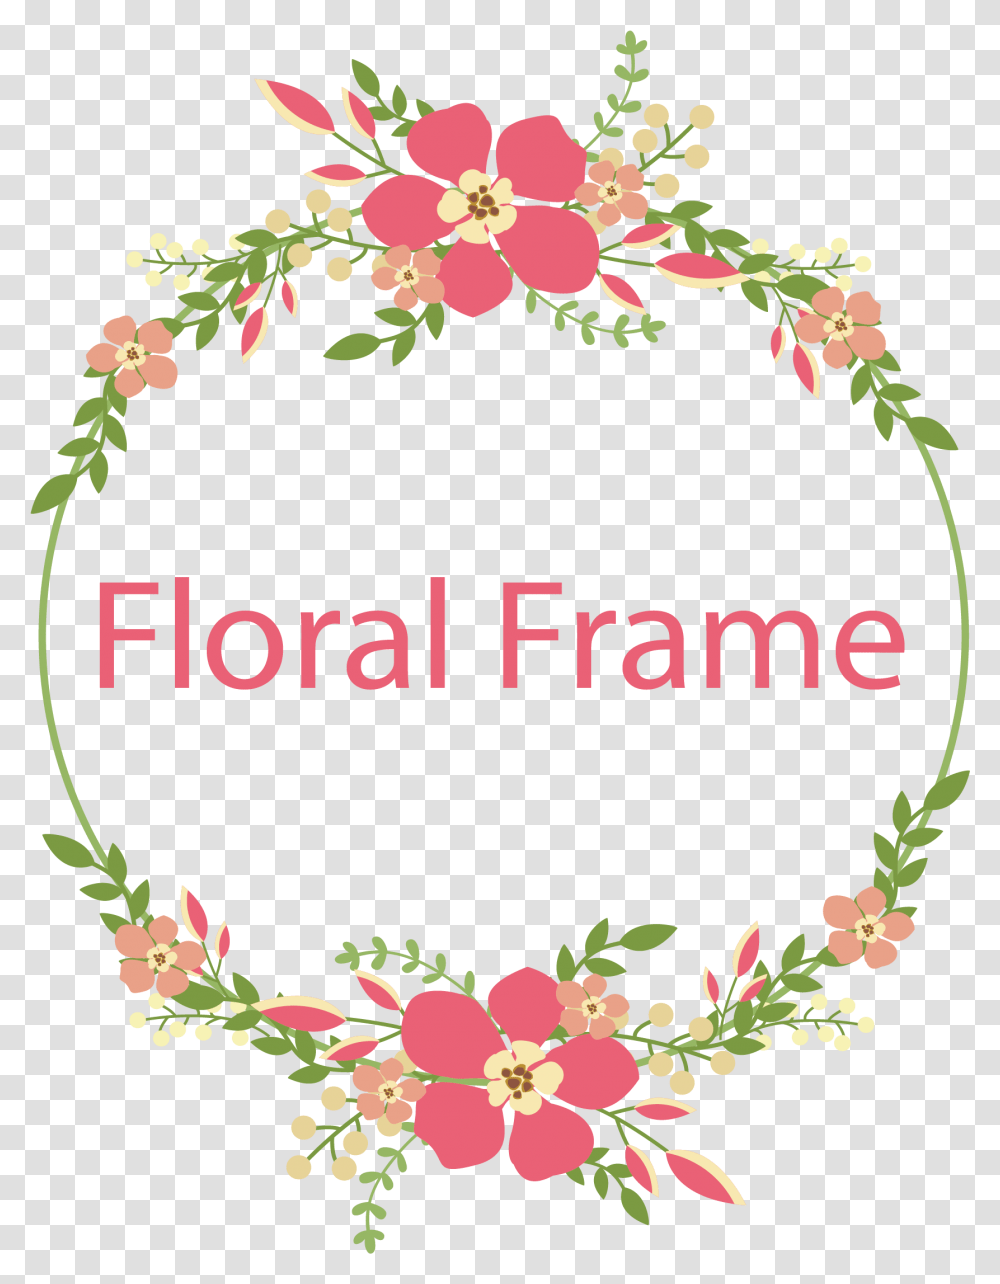 Download Vector Frame Flower Free Cross Stitch Flower Border, Graphics, Art, Floral Design, Pattern Transparent Png